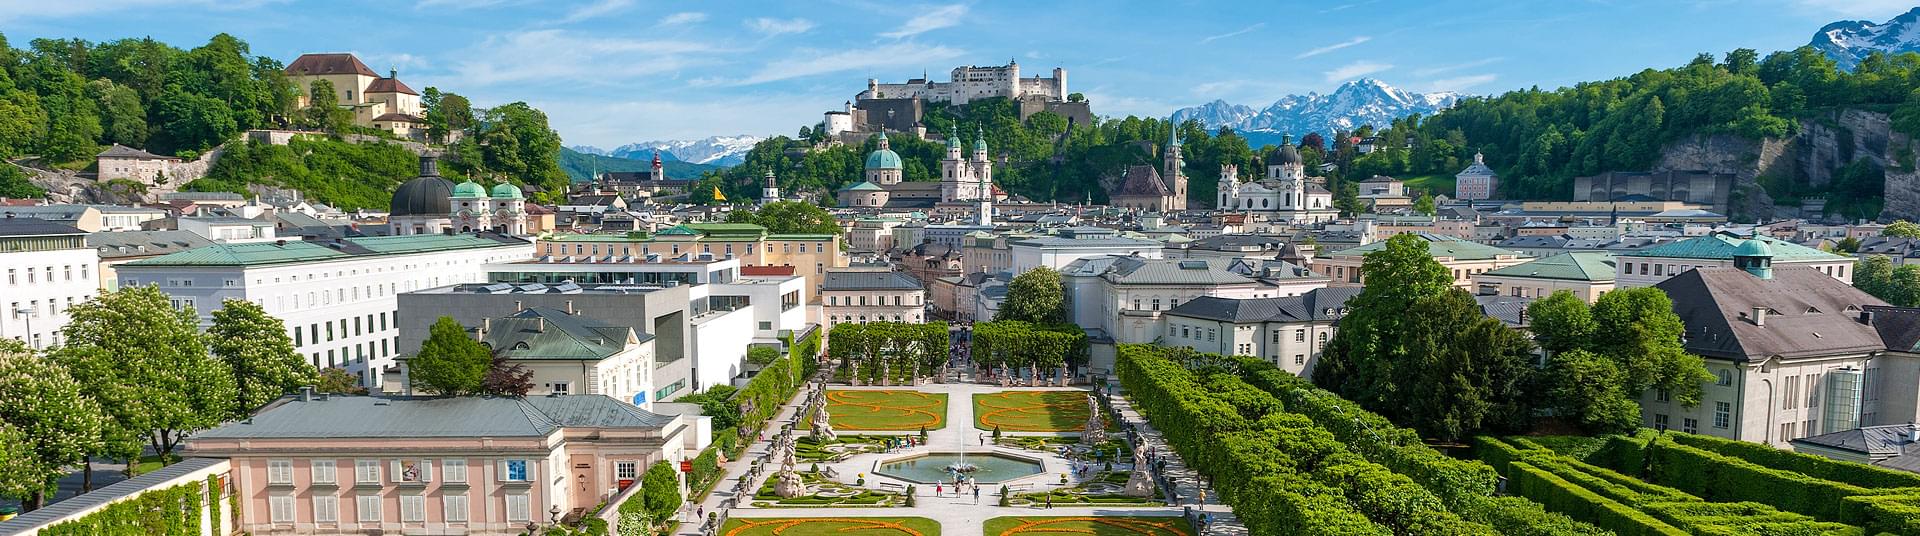 Die Stadt Salzburg im Sommer. Blick auf den Mirabellgarten & die Altstadt